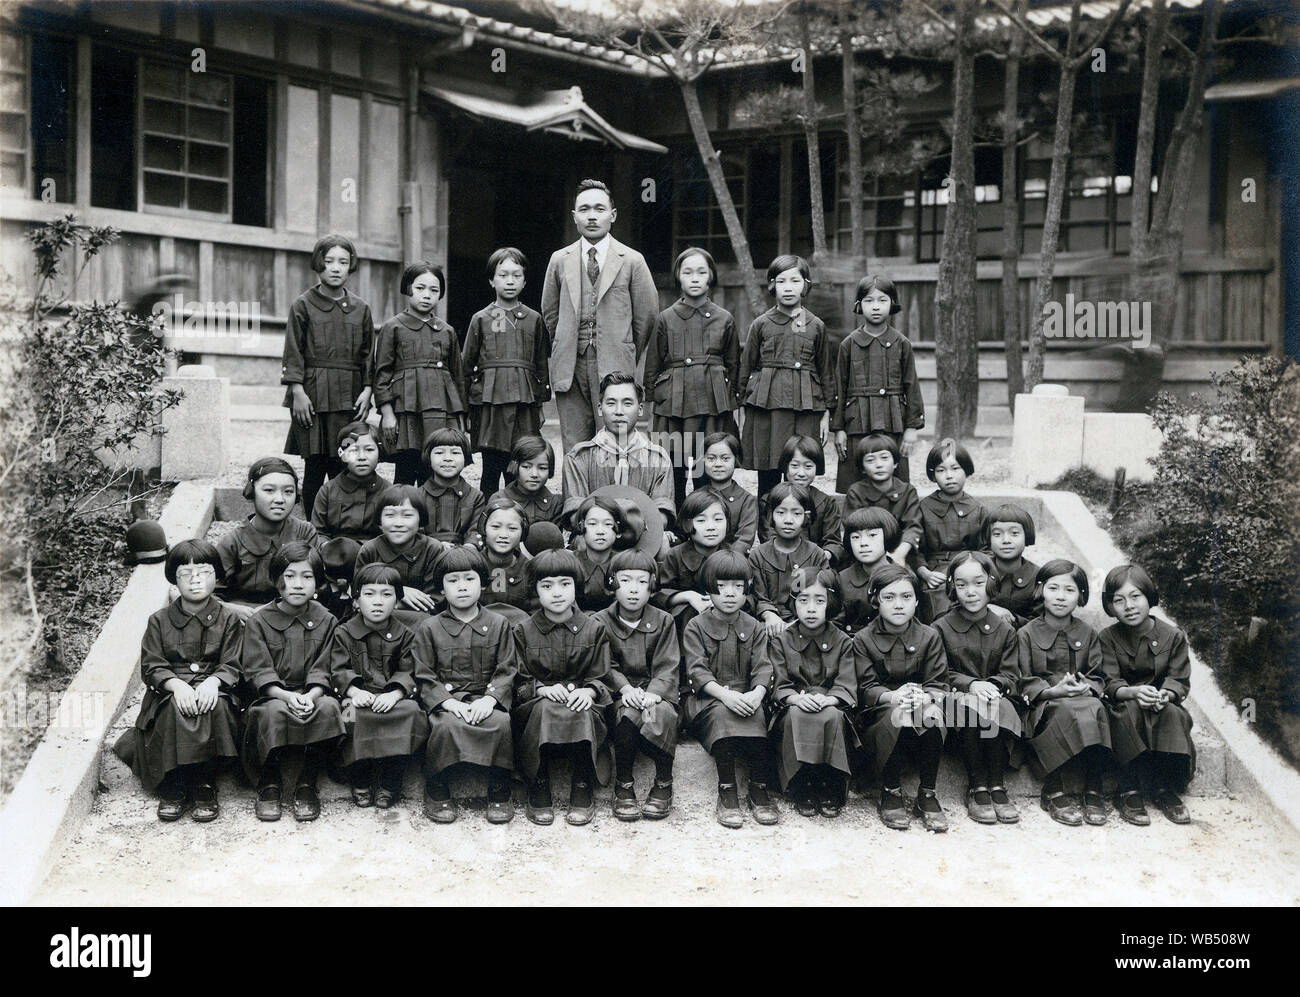 [1920s Japan - Japanische Grundschule Mädchen] - Grundschule Mädchen in Uniform für eine formelle Gruppe Foto dar. 20. Jahrhundert vintage Silbergelatineabzug. Stockfoto